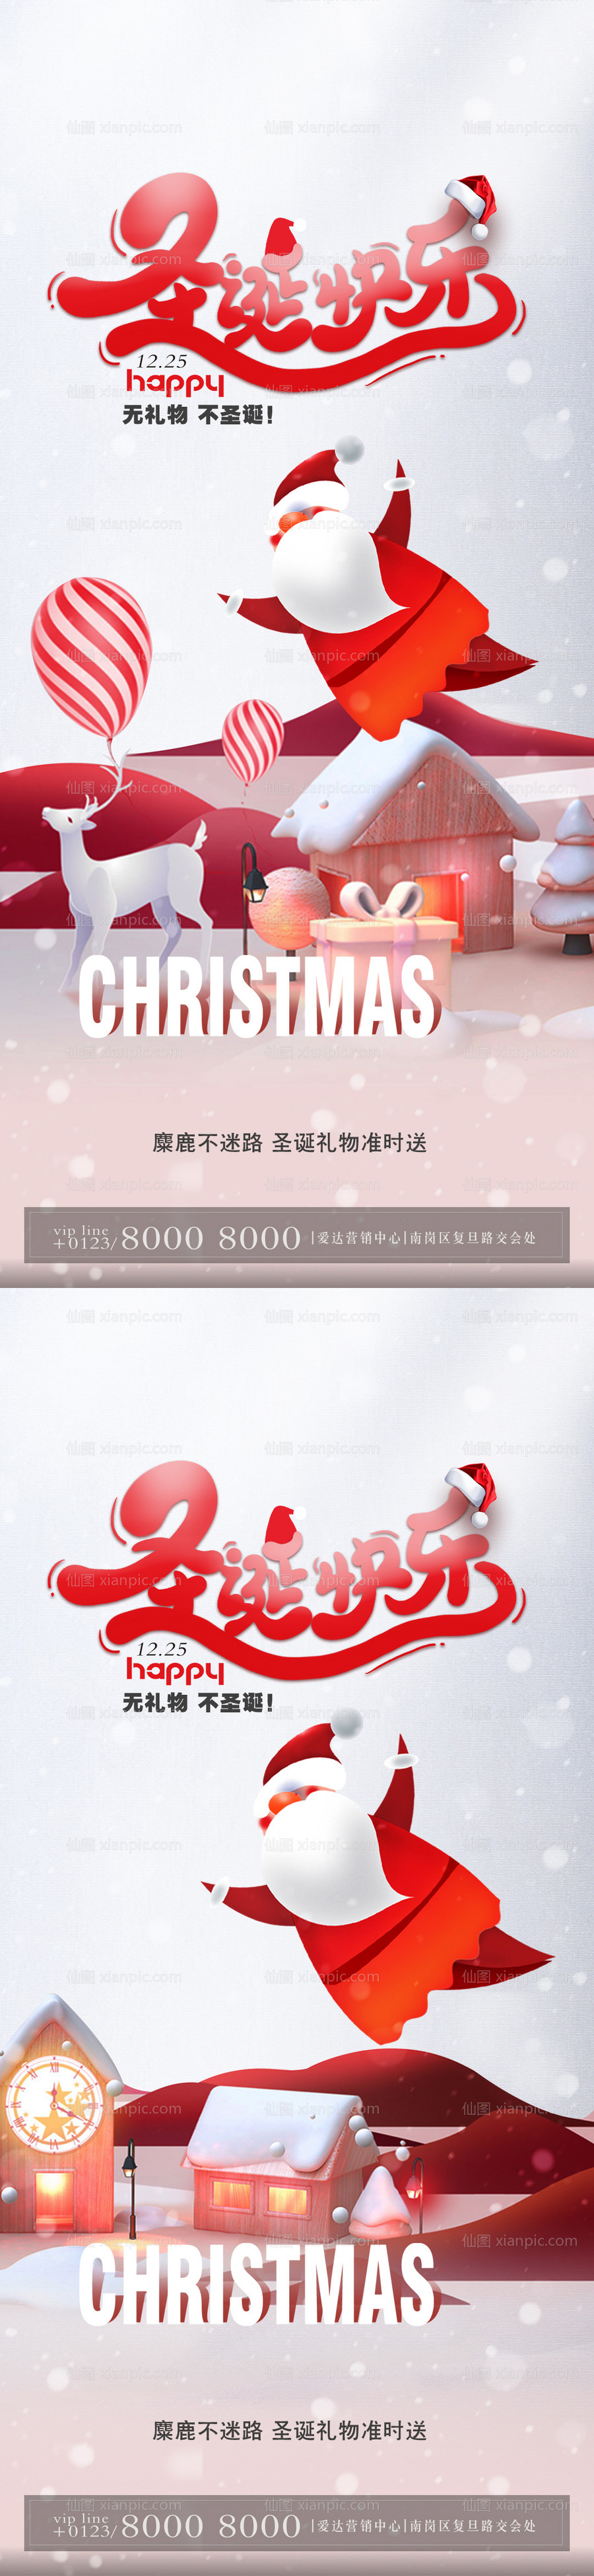 仙图网-平安夜圣诞节节日海报